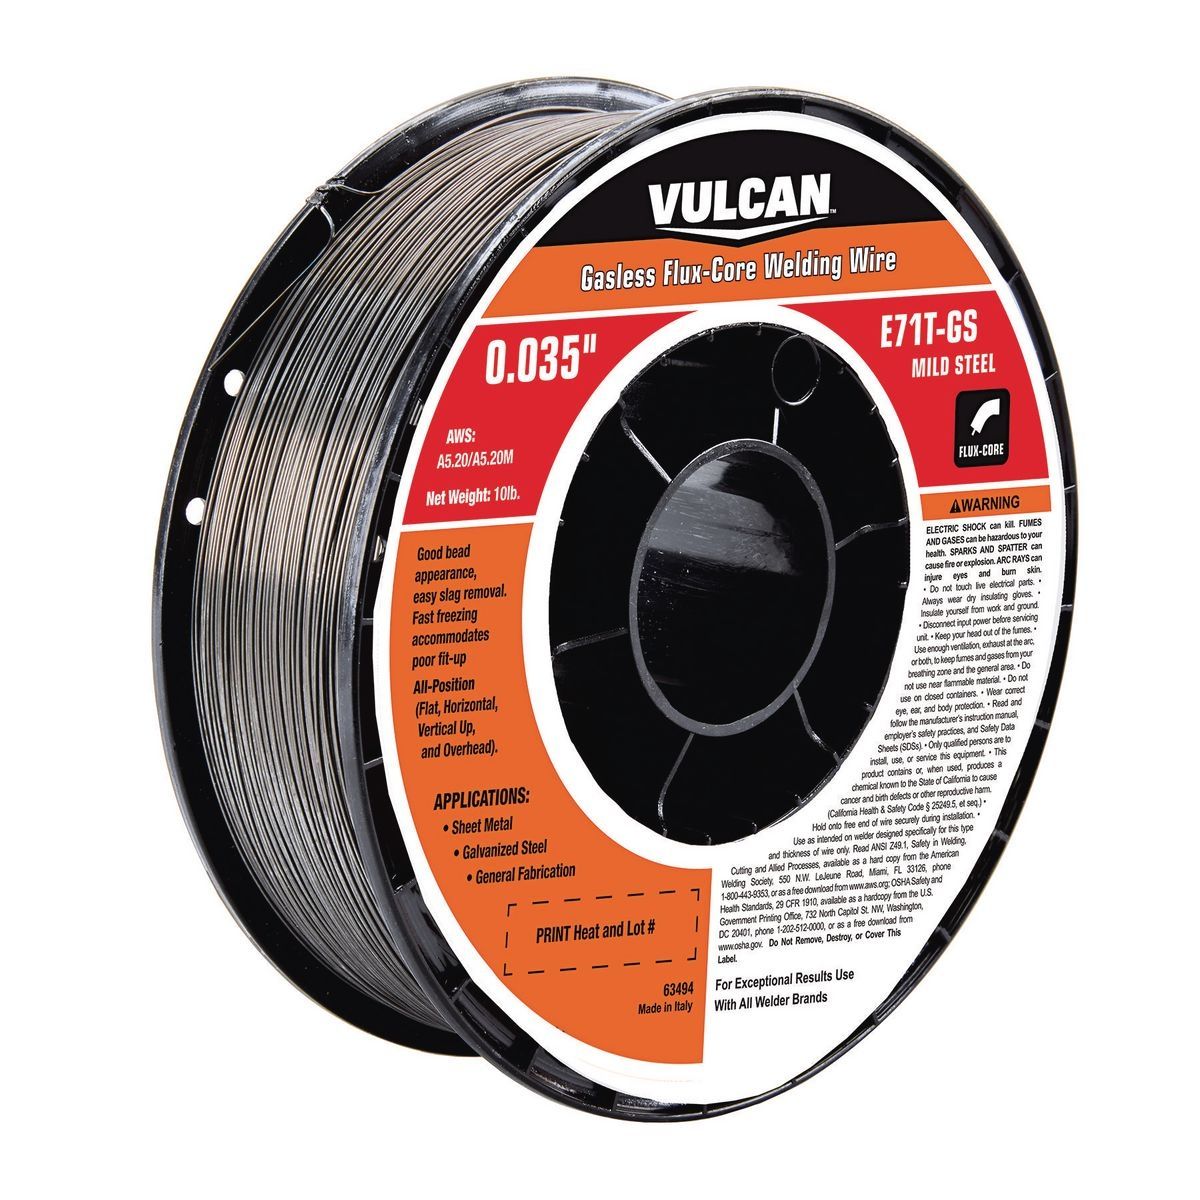 VULCAN 0.035 in. E71T-GS Flux Core Welding Wire, 10 lb. Roll